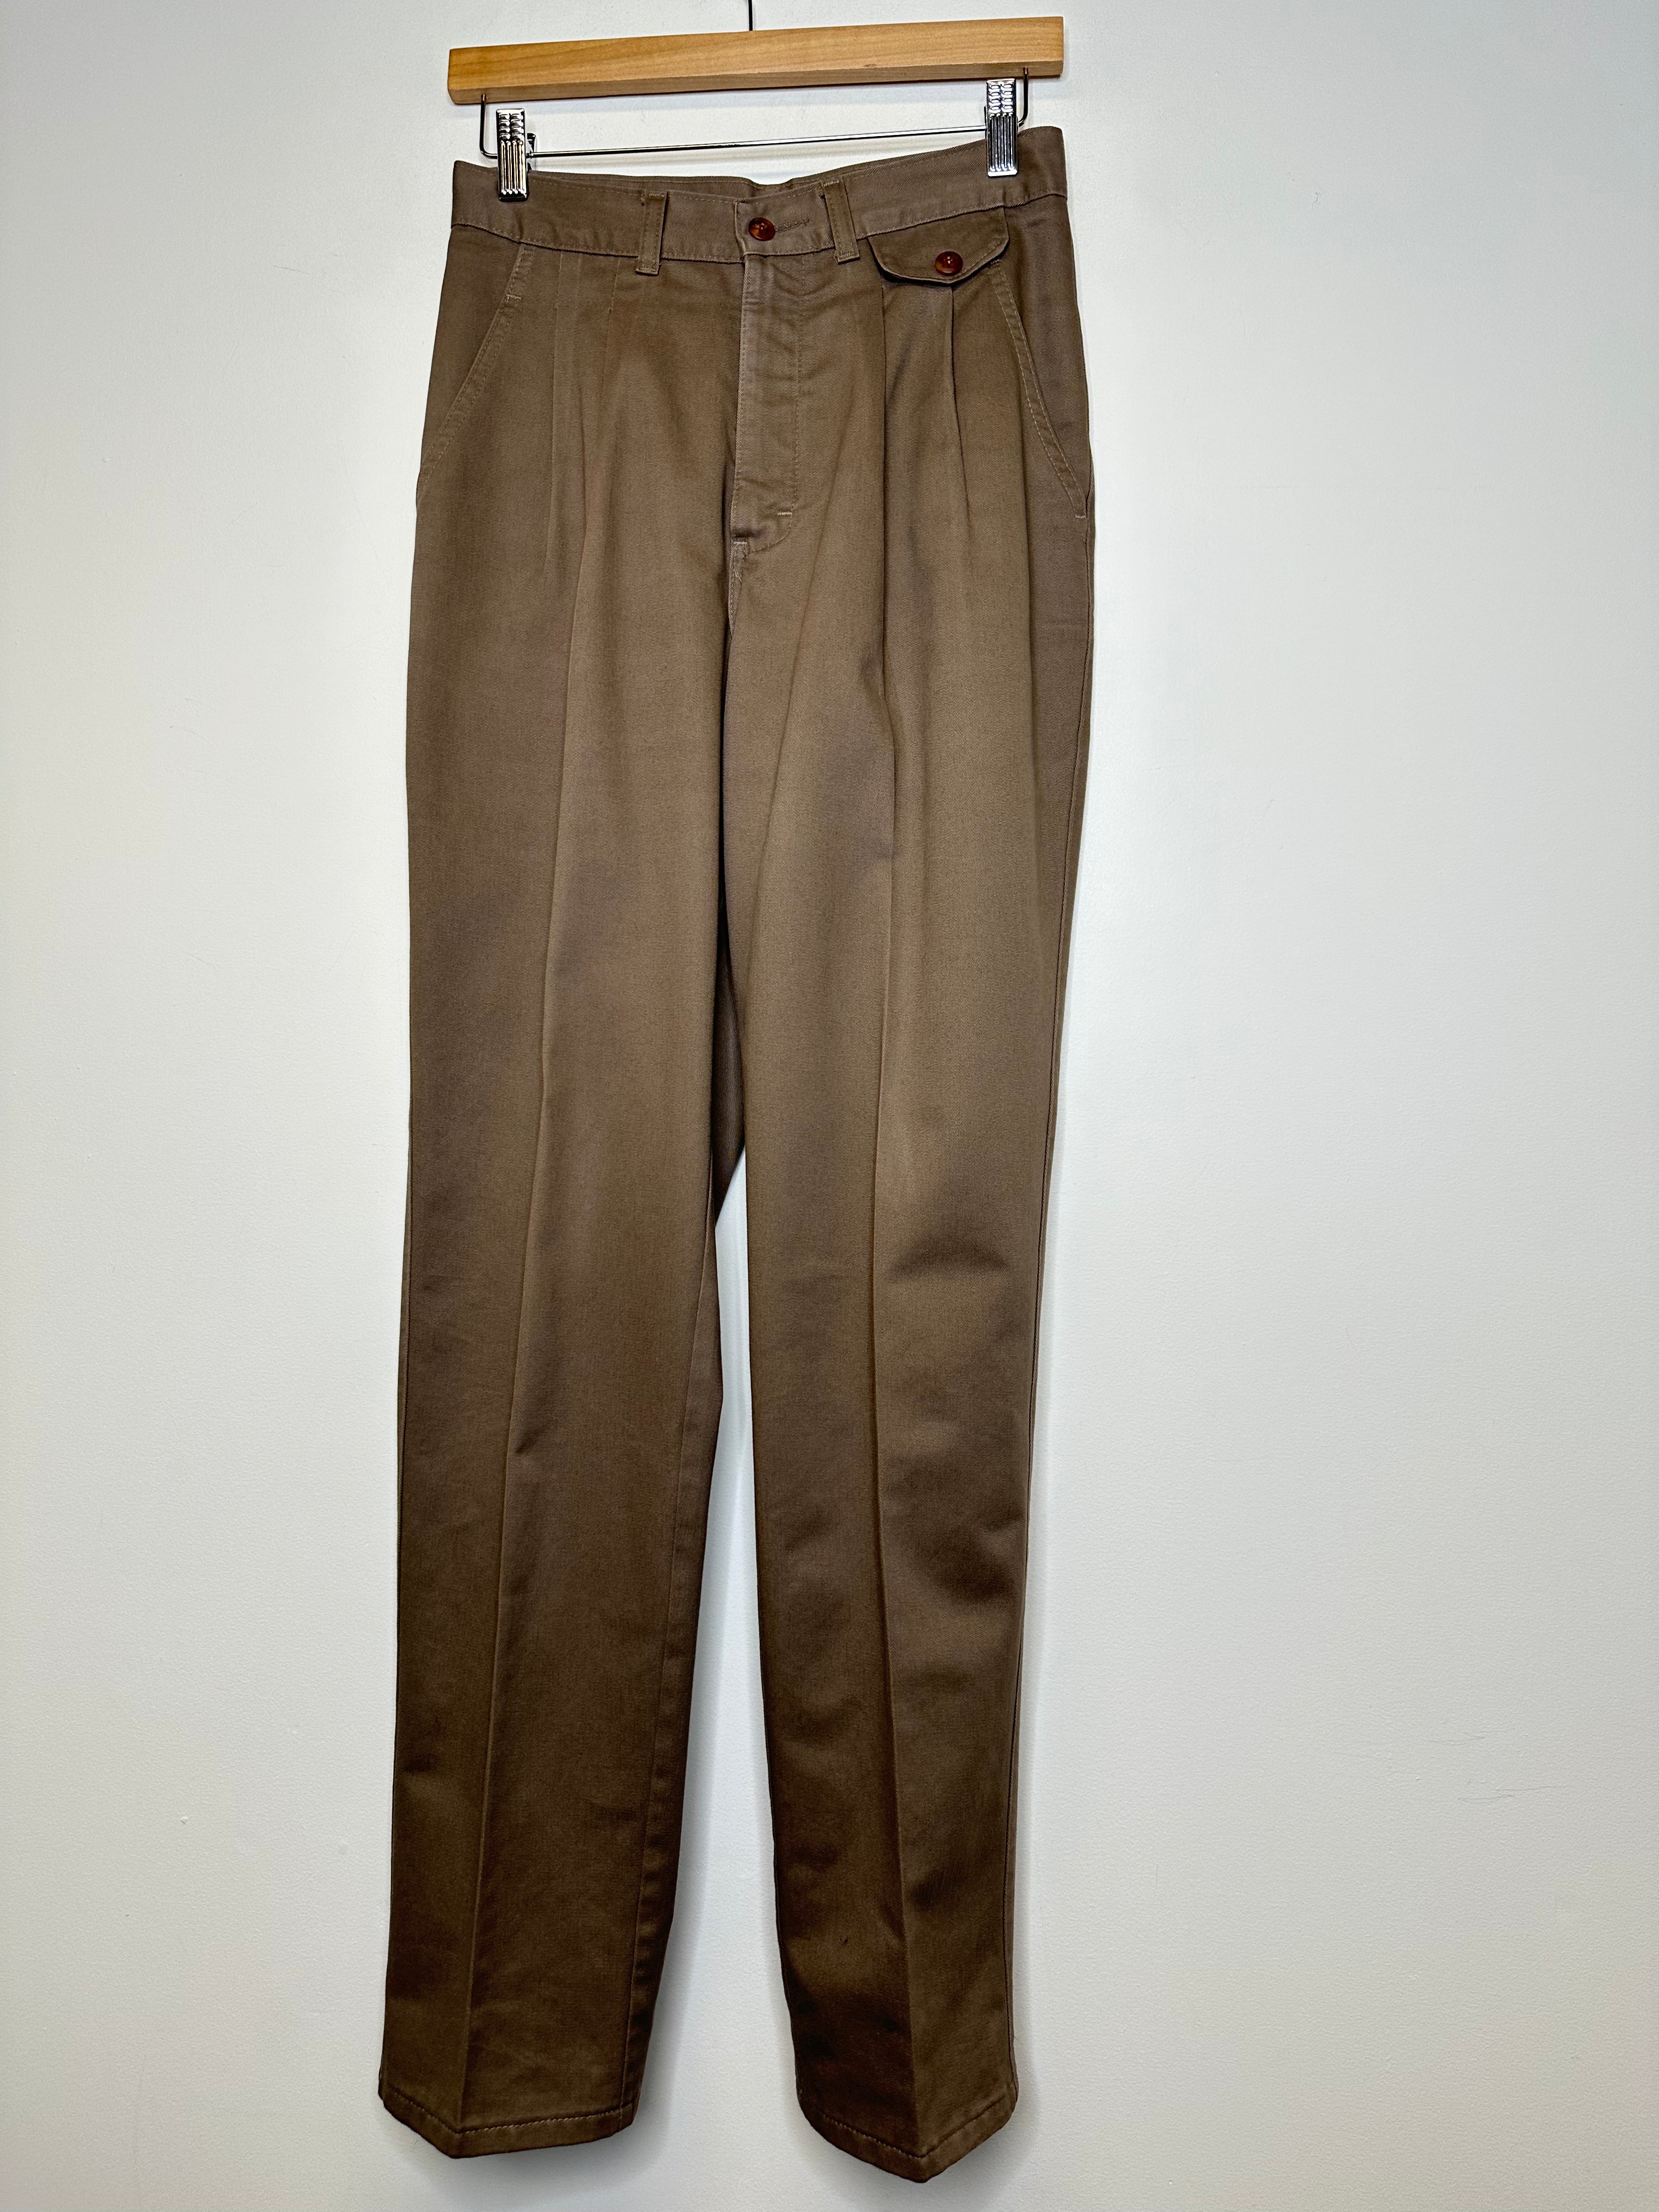 Vintage Brown Pants - S/28